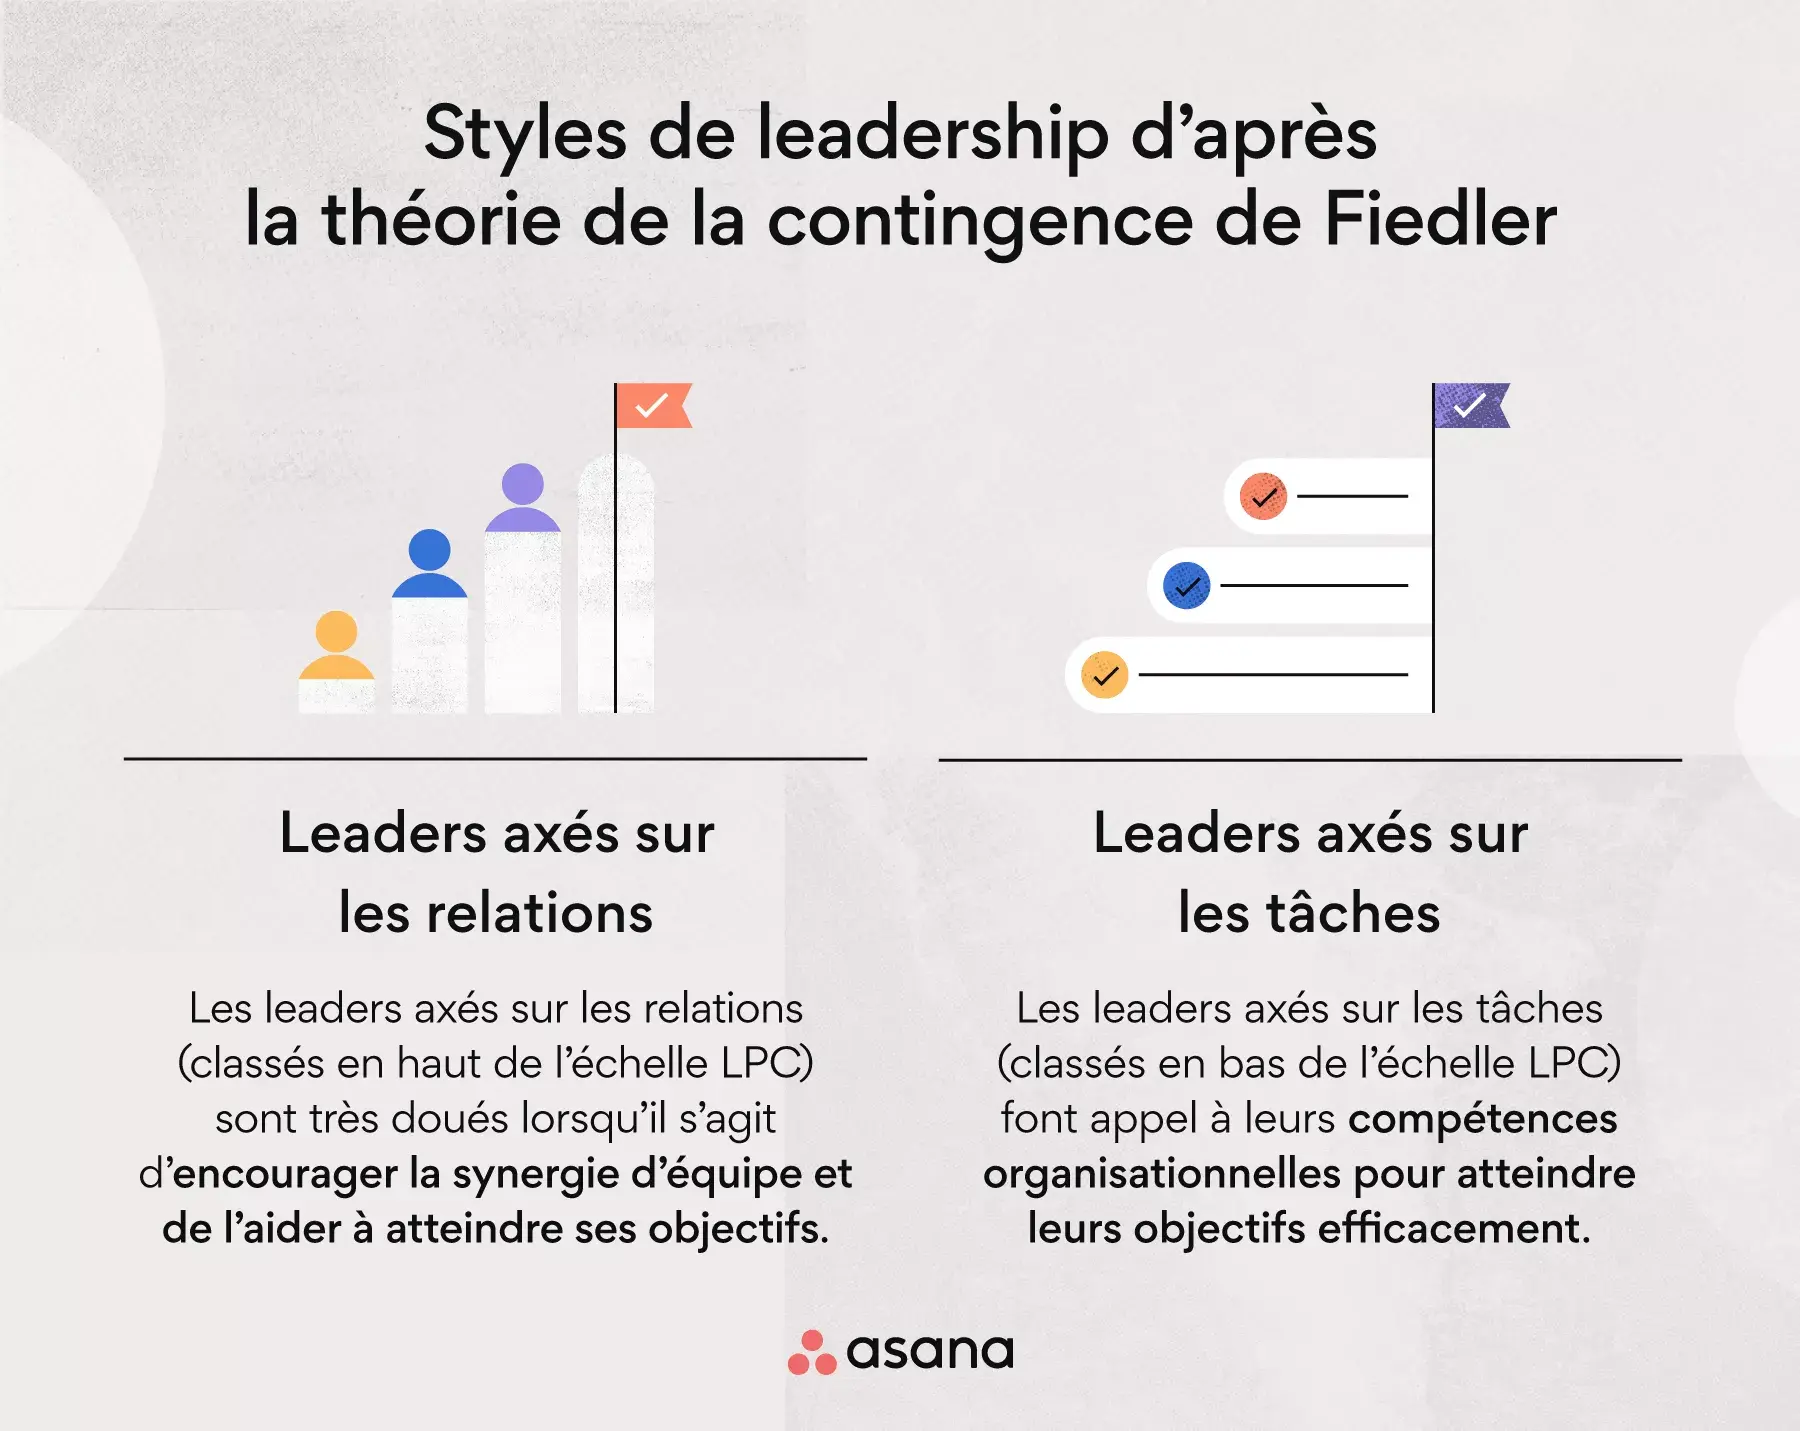 Styles de leadership d’après la théorie de la contingence de Fiedler